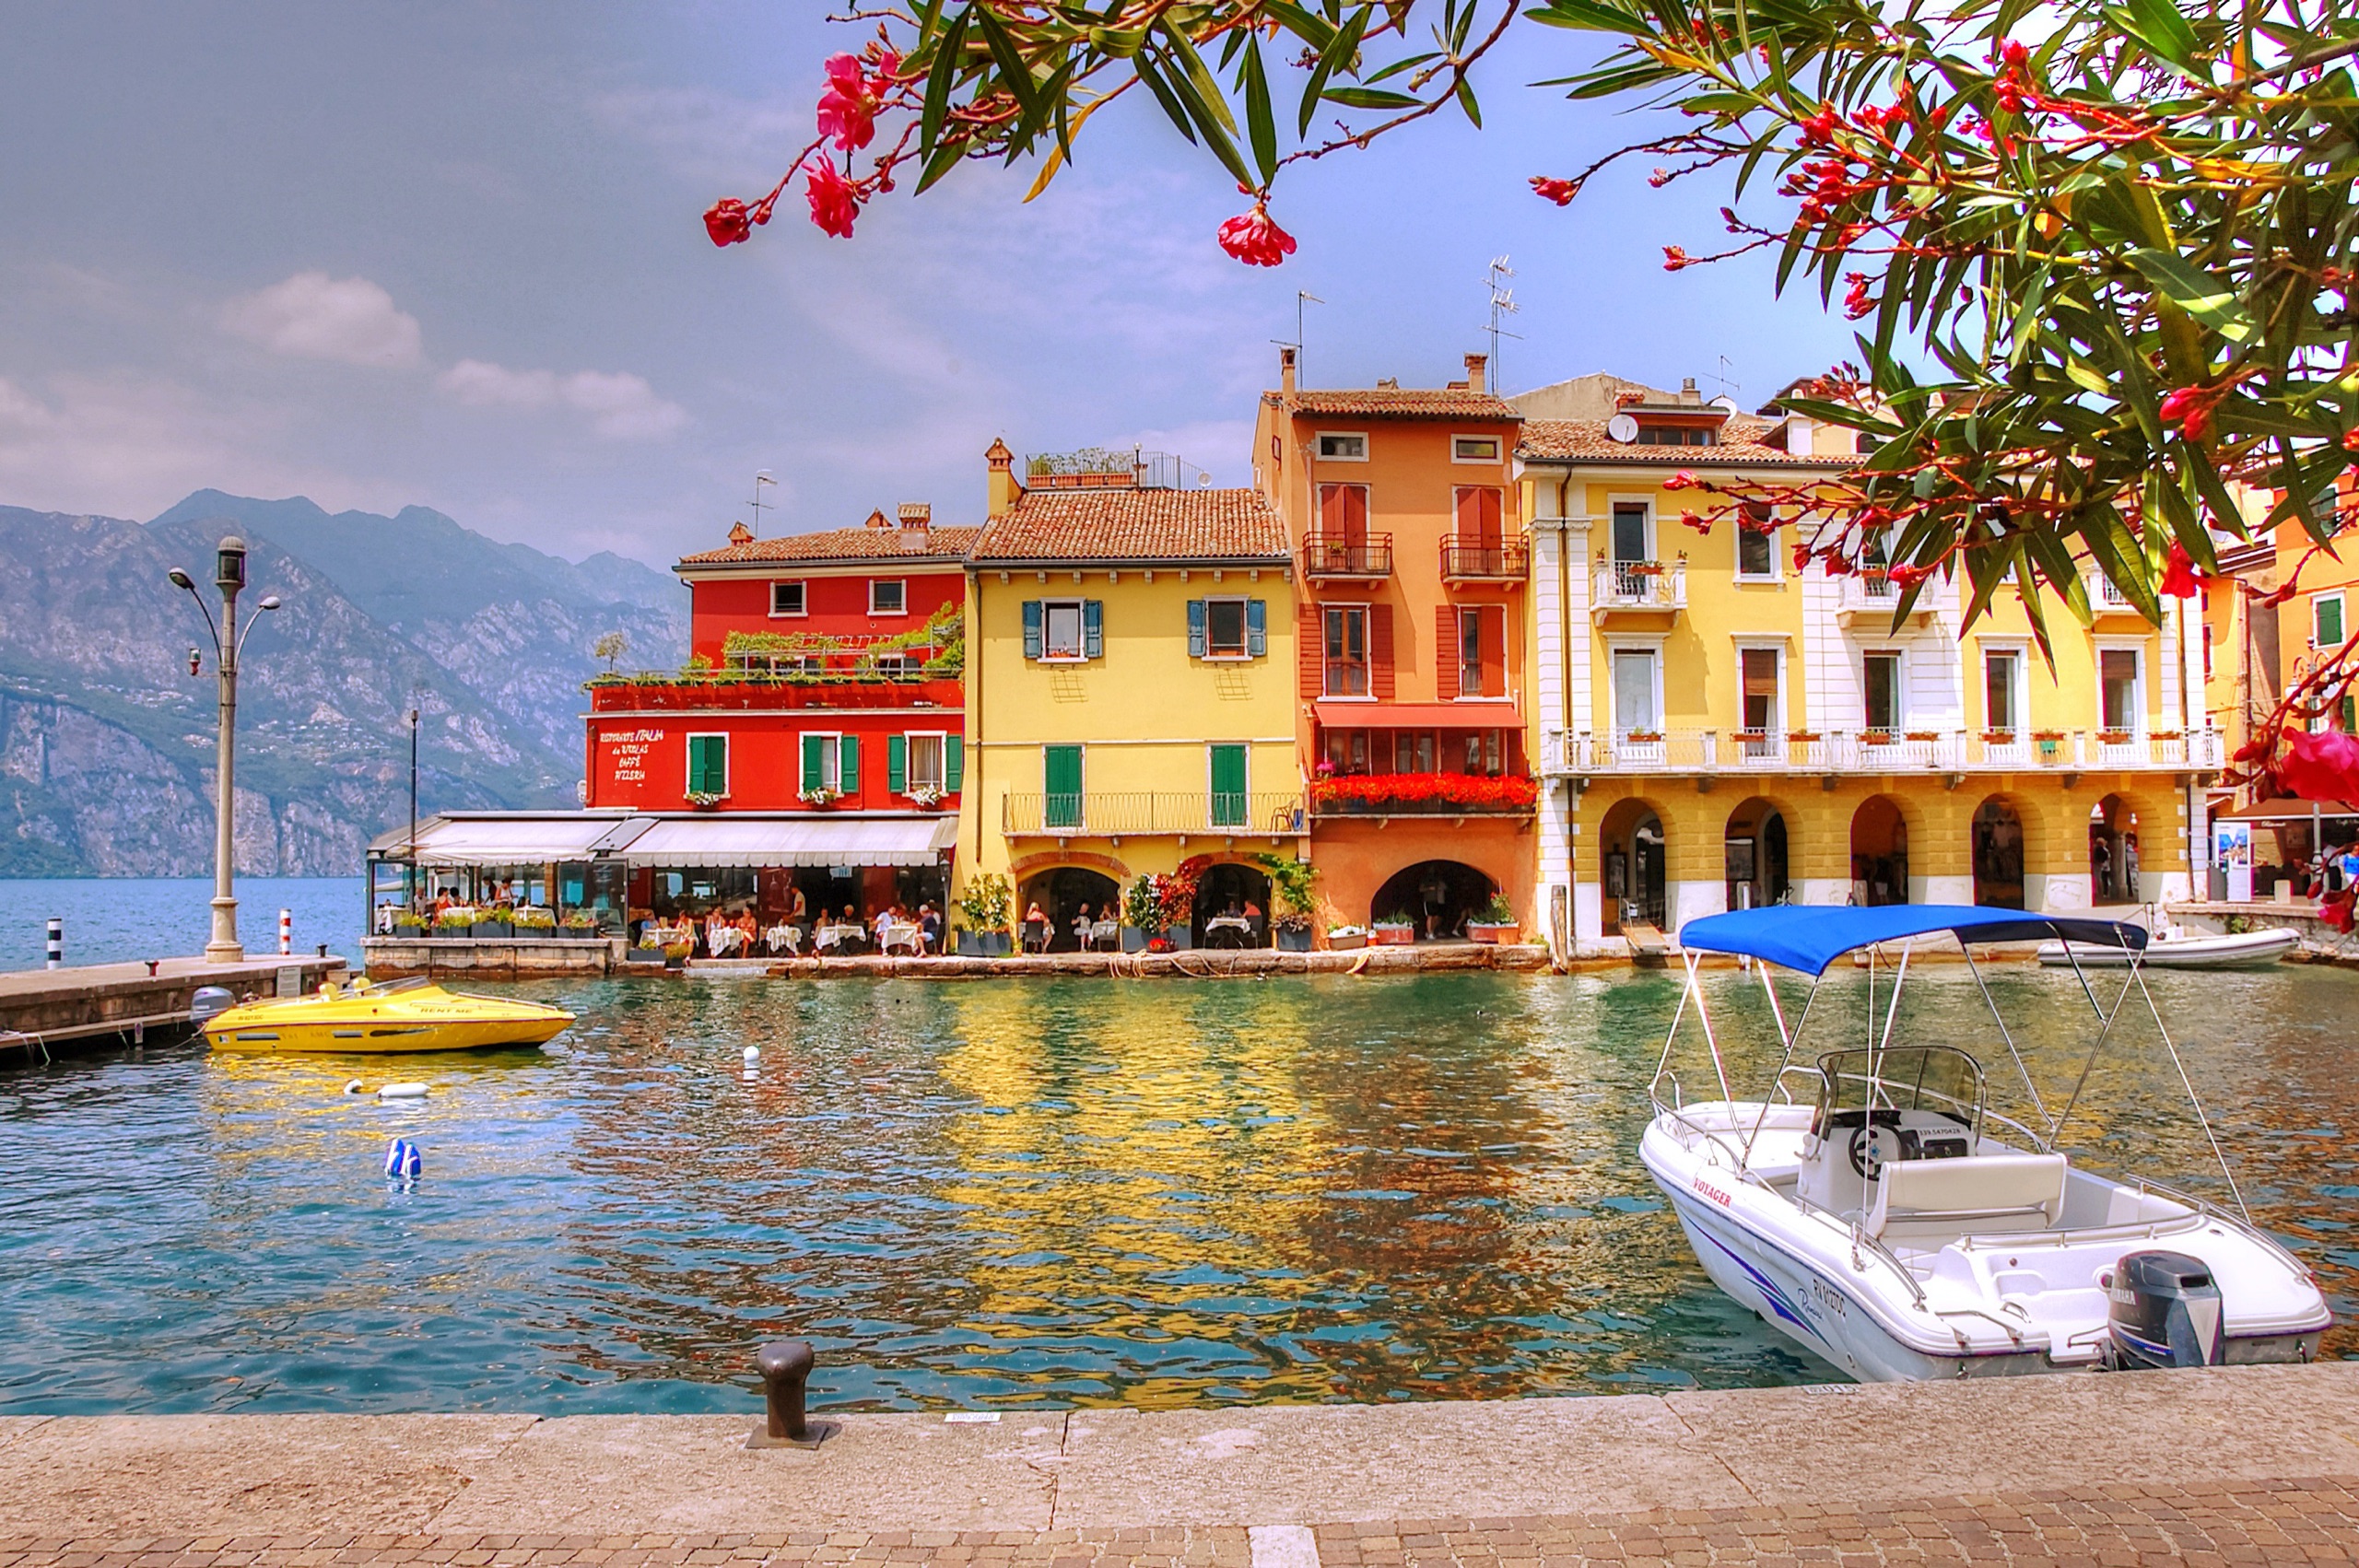 טיול קסום בצפון איטליה. צילום: Pixabay